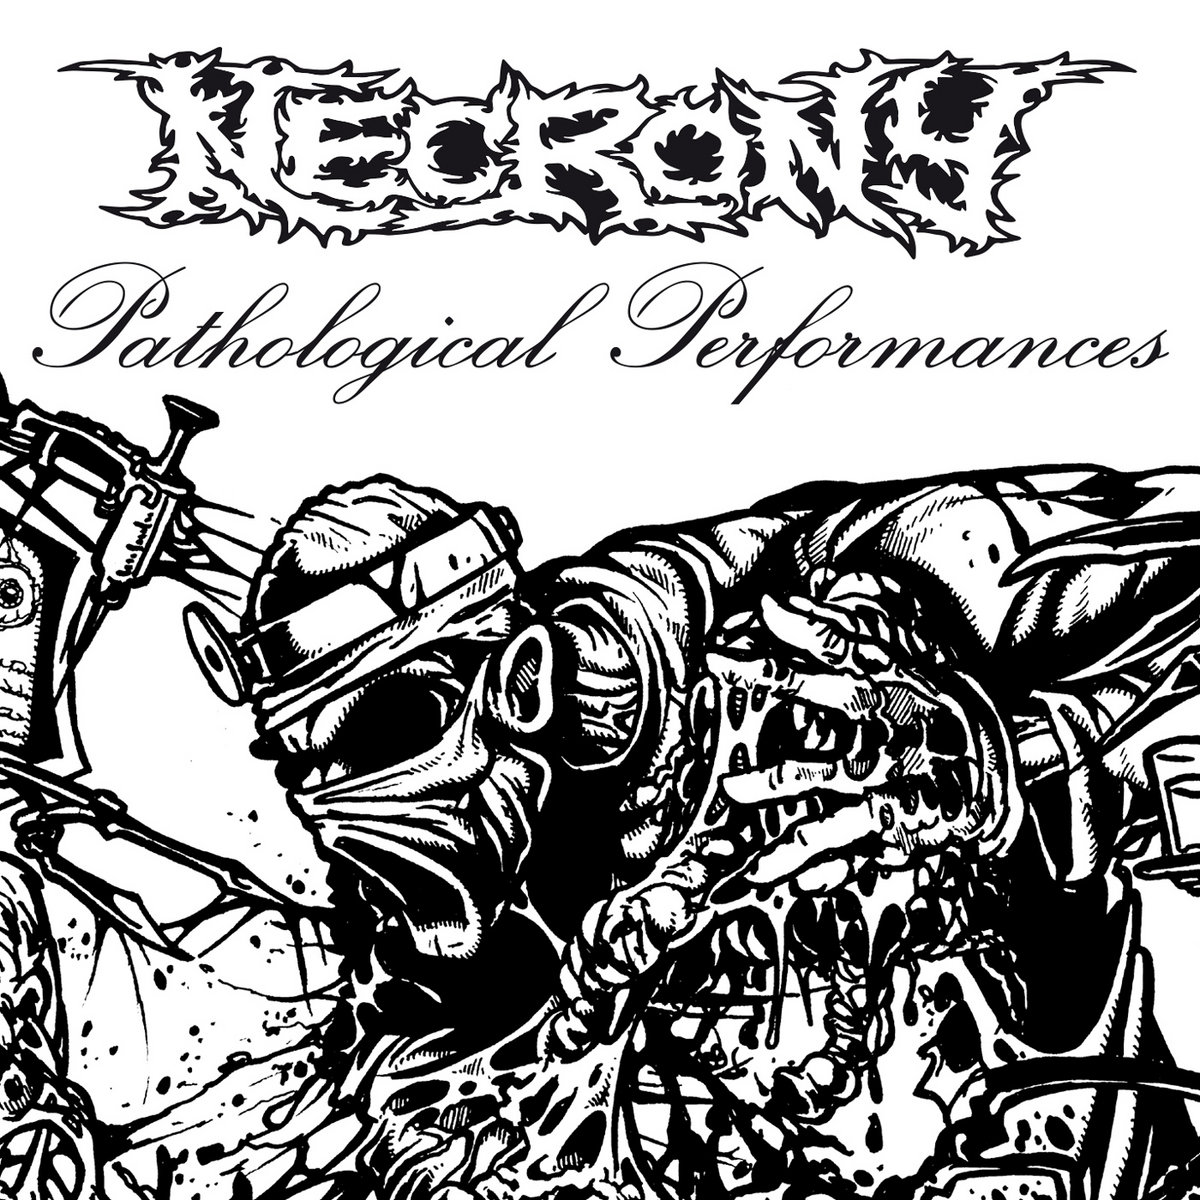 Necrony – Pathological Performances CD